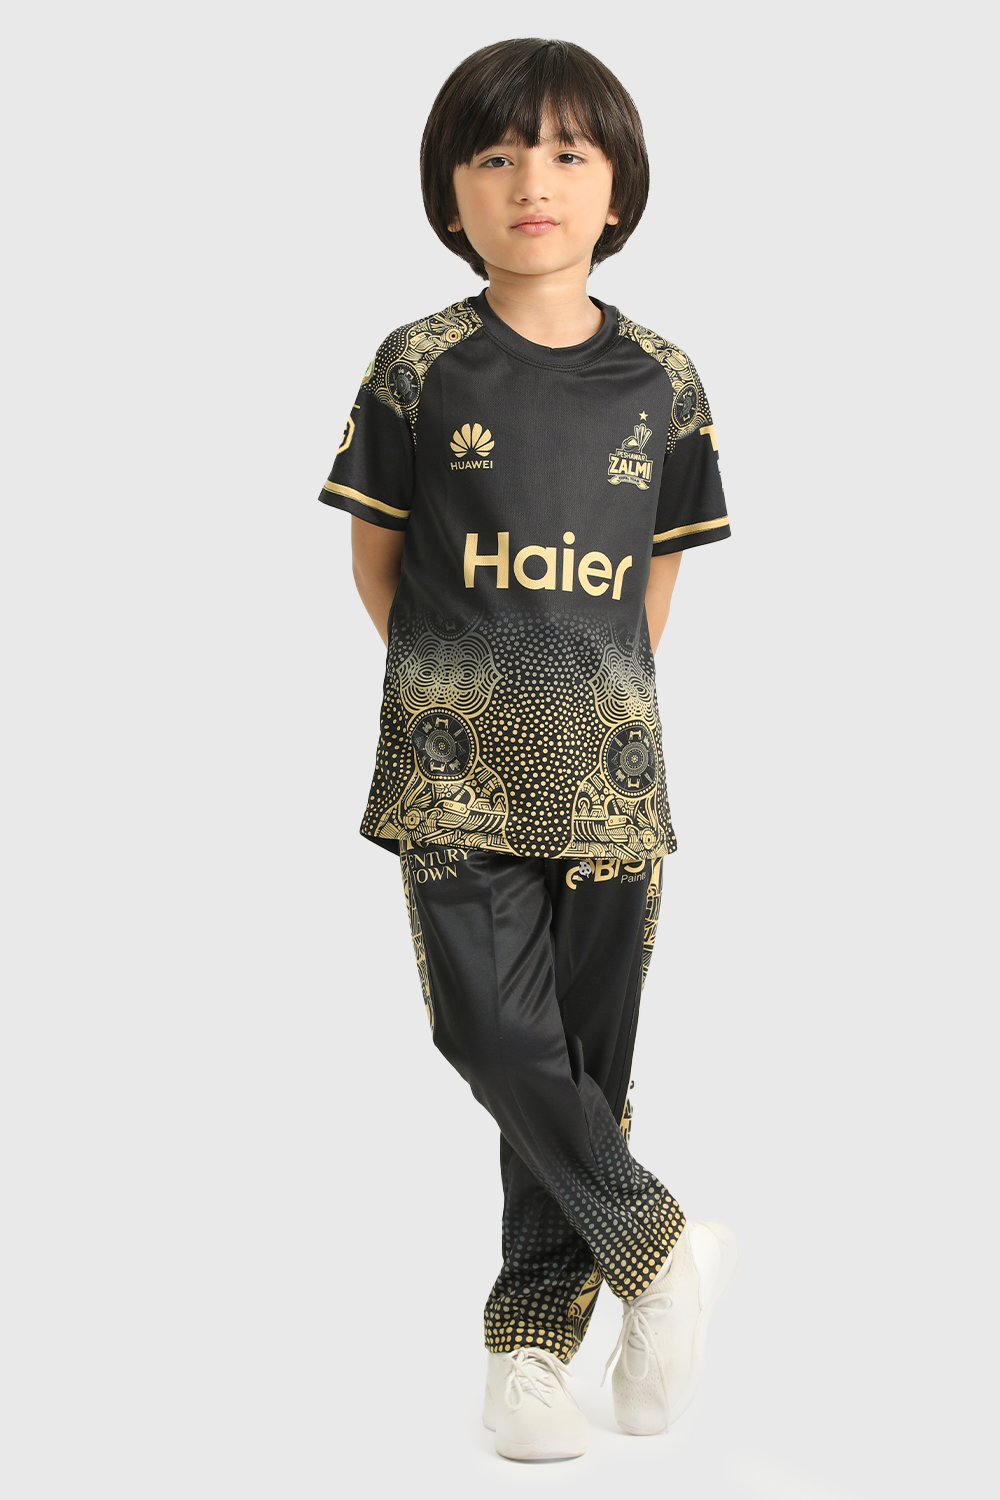 Peshawar Zalmi PSL 9 Juniors Away Kit (Shirt and Trouser)